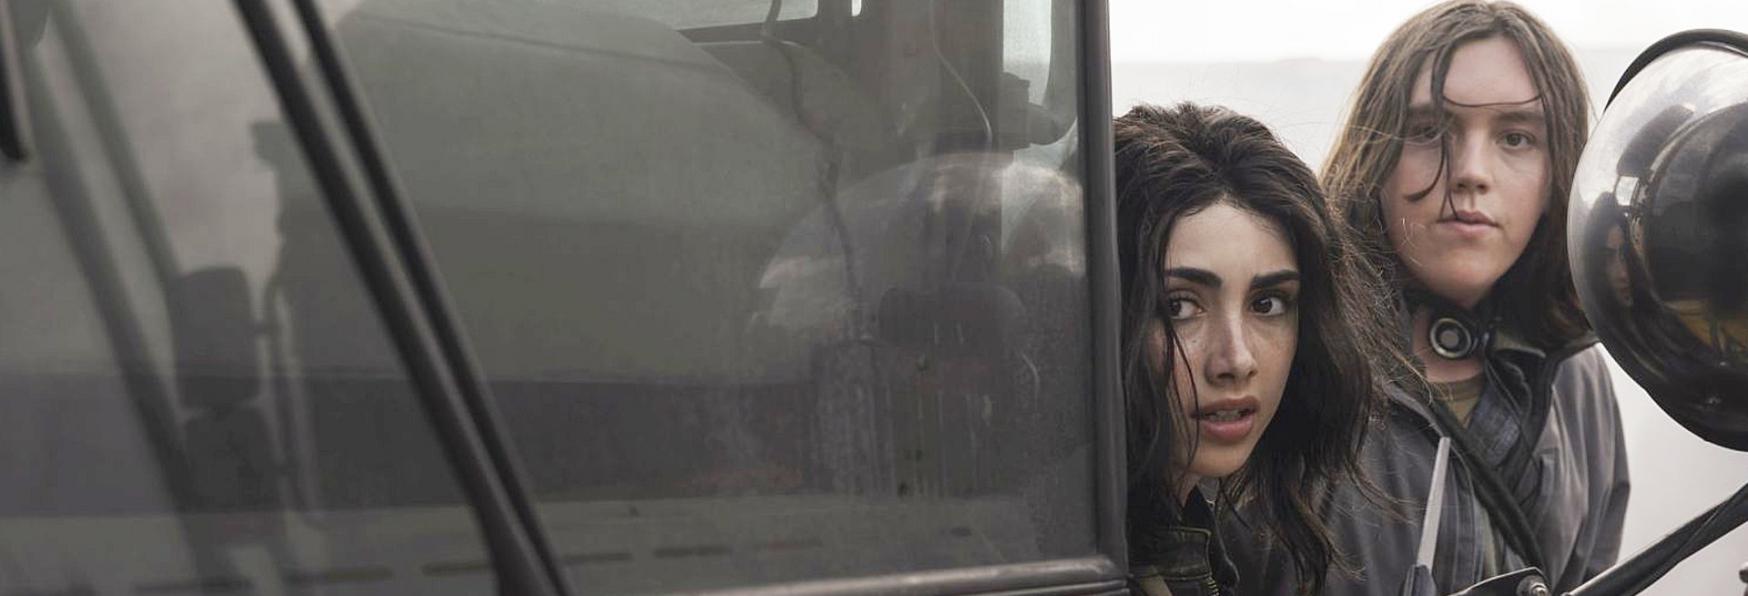 The Walking Dead: World Beyond - il Trailer dello Spin-off rivela dettagli sulla Cura Zombie